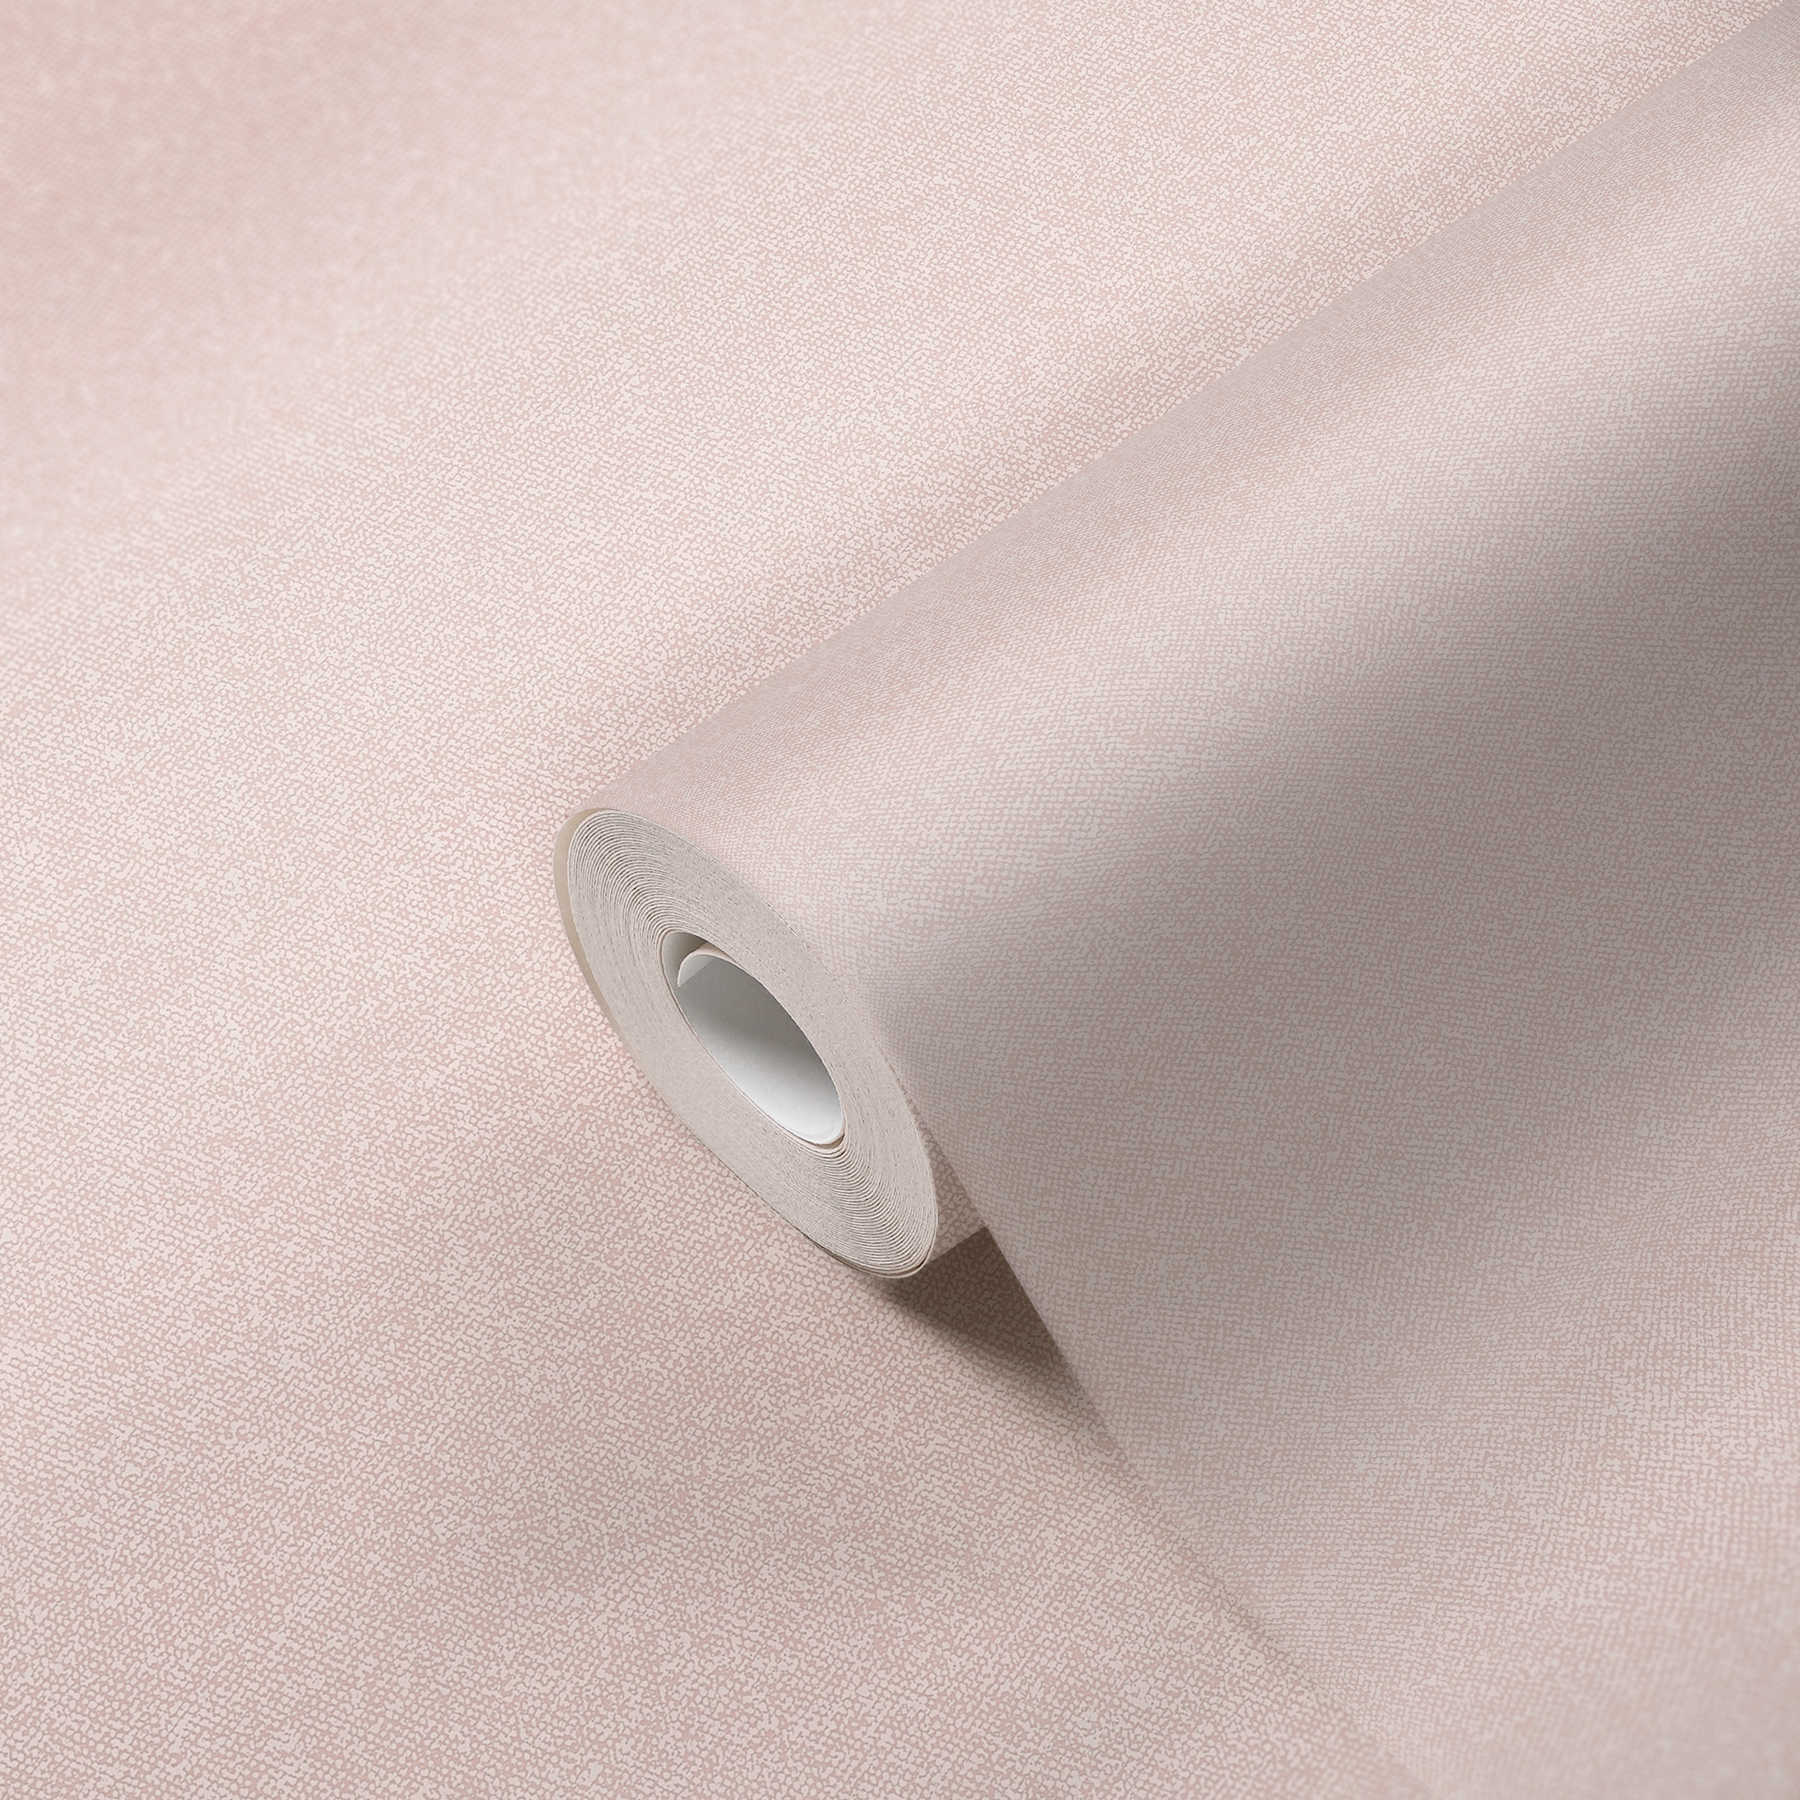             Papier peint à l'aspect textile uni - rose, crème, blanc
        